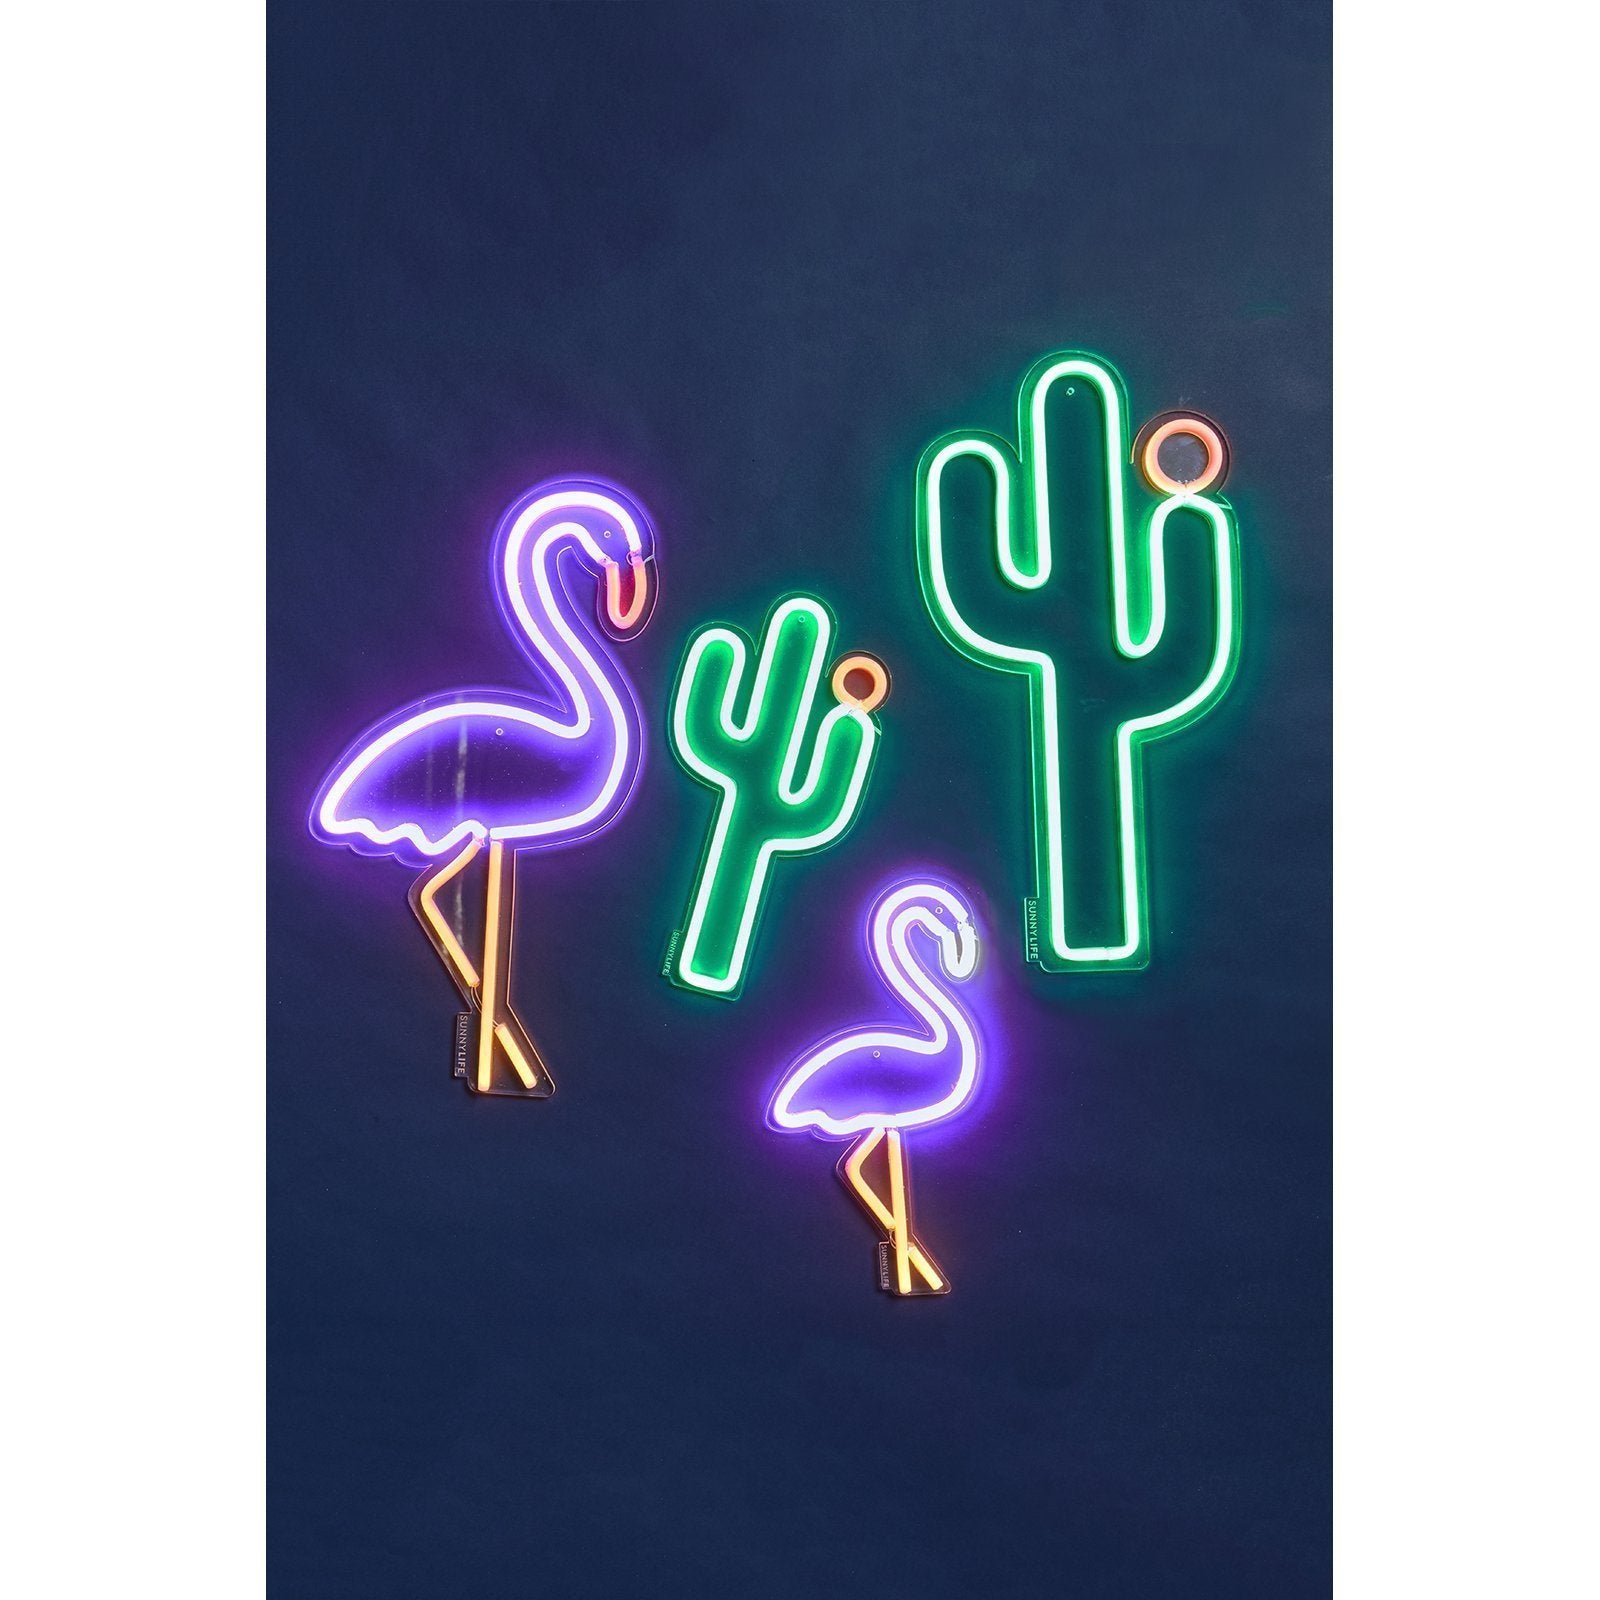 Sunnylife Cactus Neon Wall Light Large UK